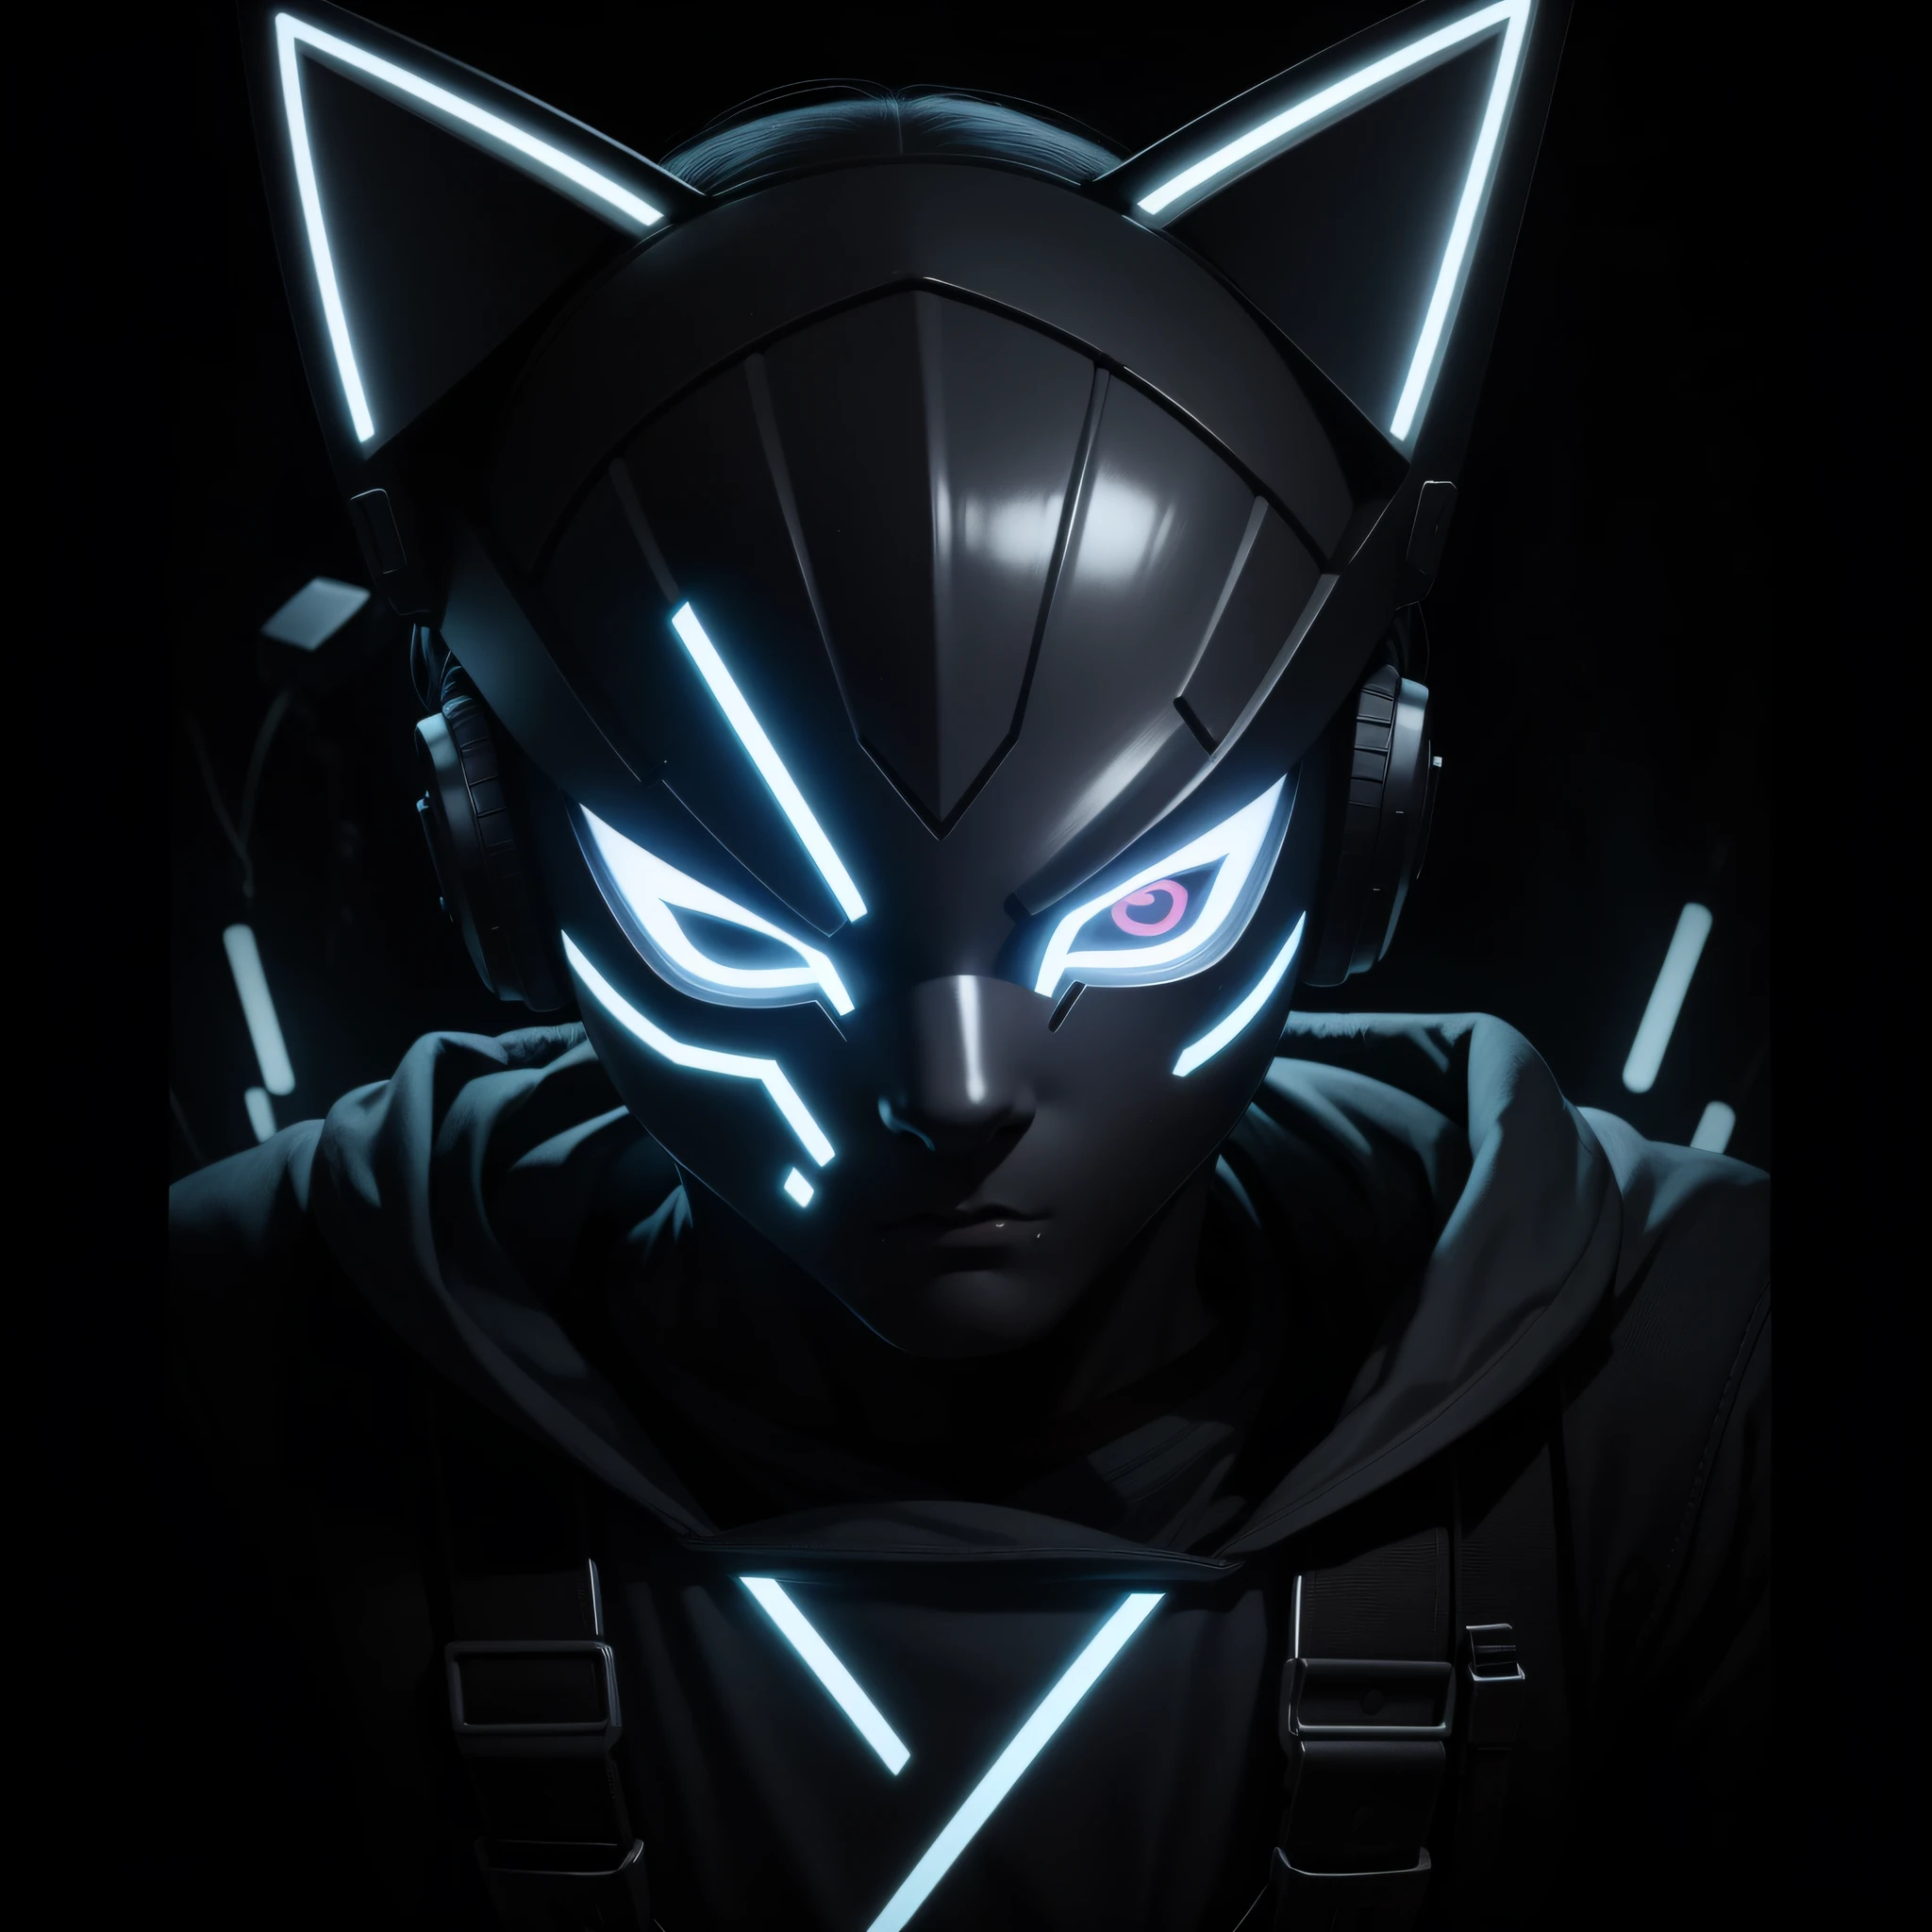 사이버네틱 LED 마스크를 쓴 소년의 PFP 로고 캐릭터, 마스크의 LED가 고양이 모양을 이룬다